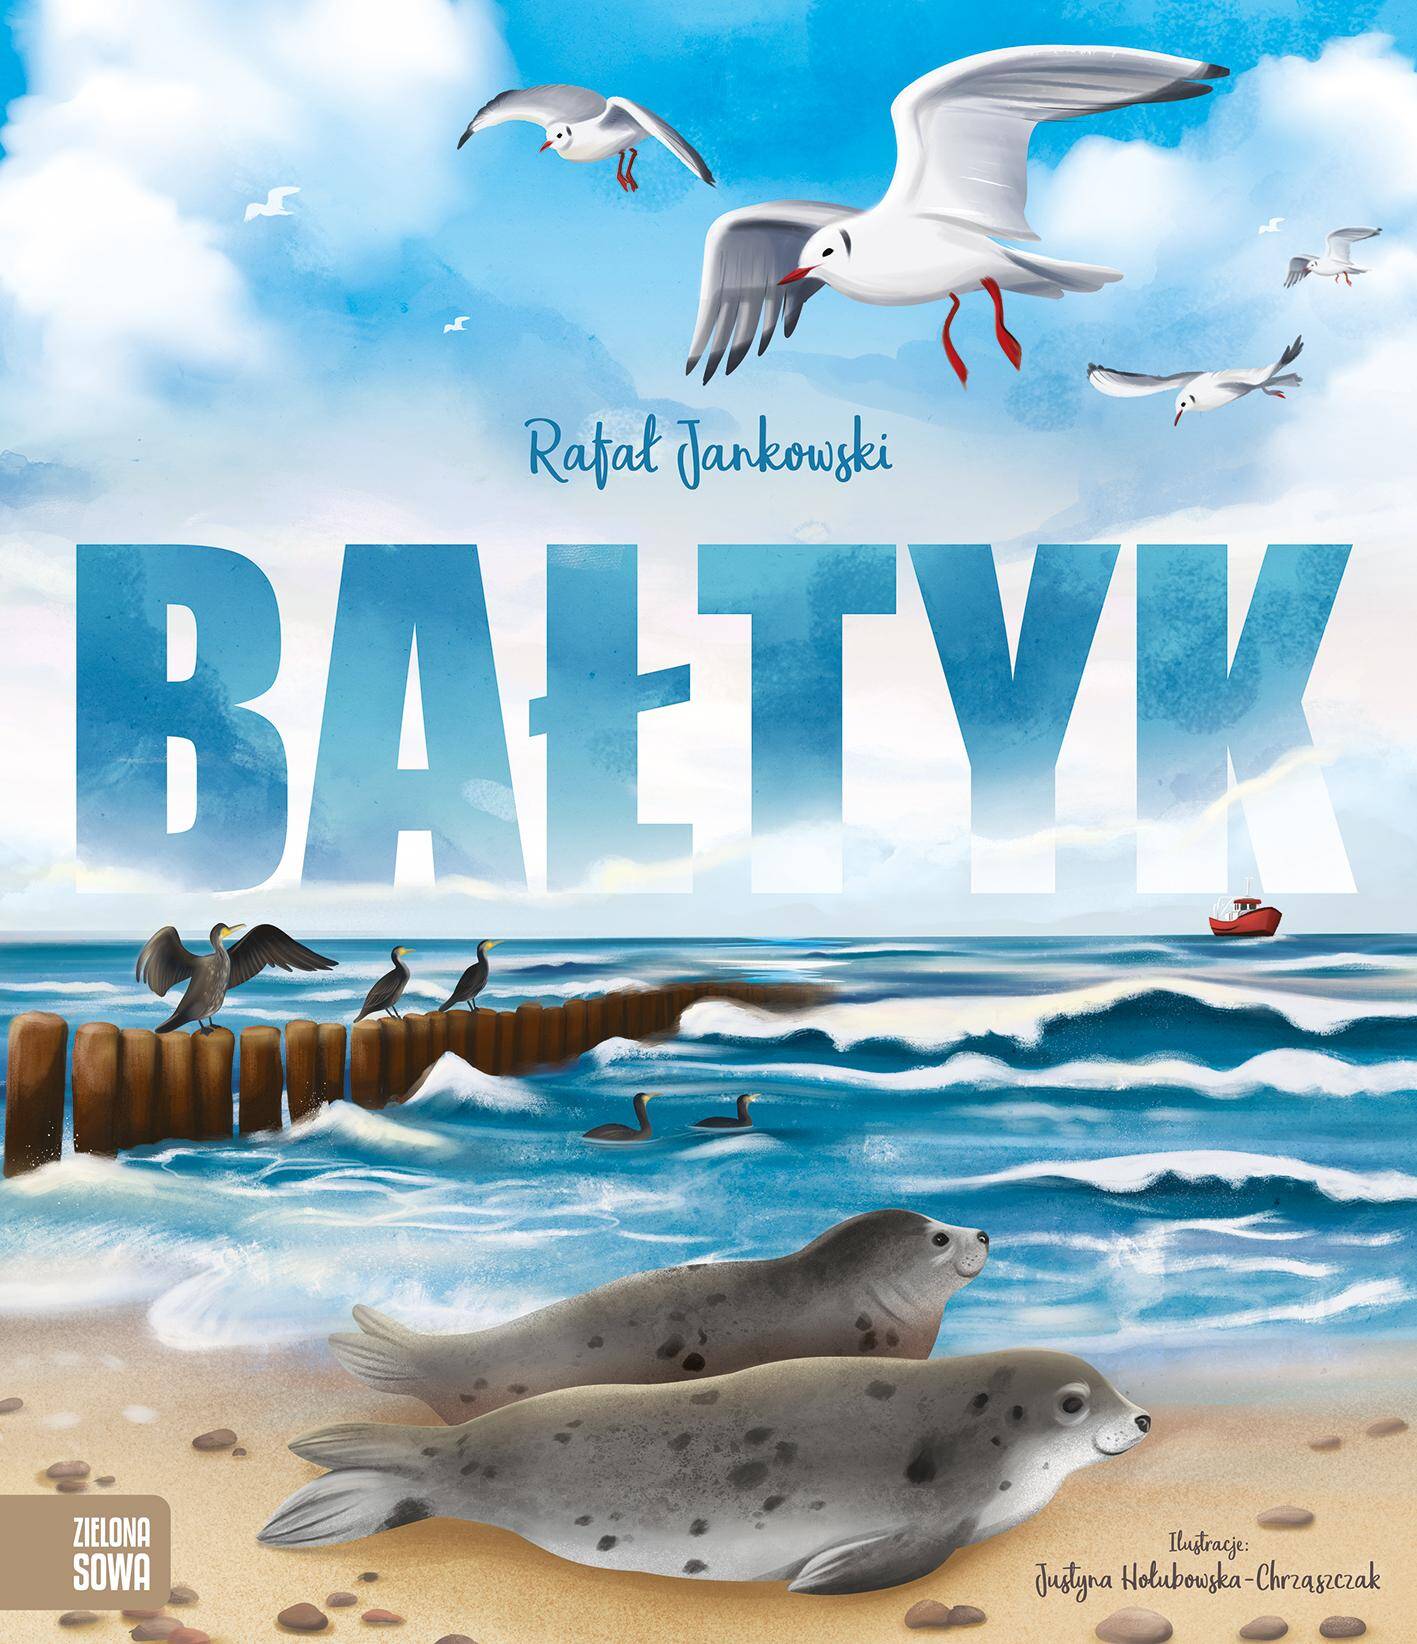 Morze Bałtyckie zwykle kojarzy się nam z szeroką piaszczystą plażą, zimną wodą, bursztynem i flądrą z kutra. Taki Bałtyk znamy prawie wszyscy.